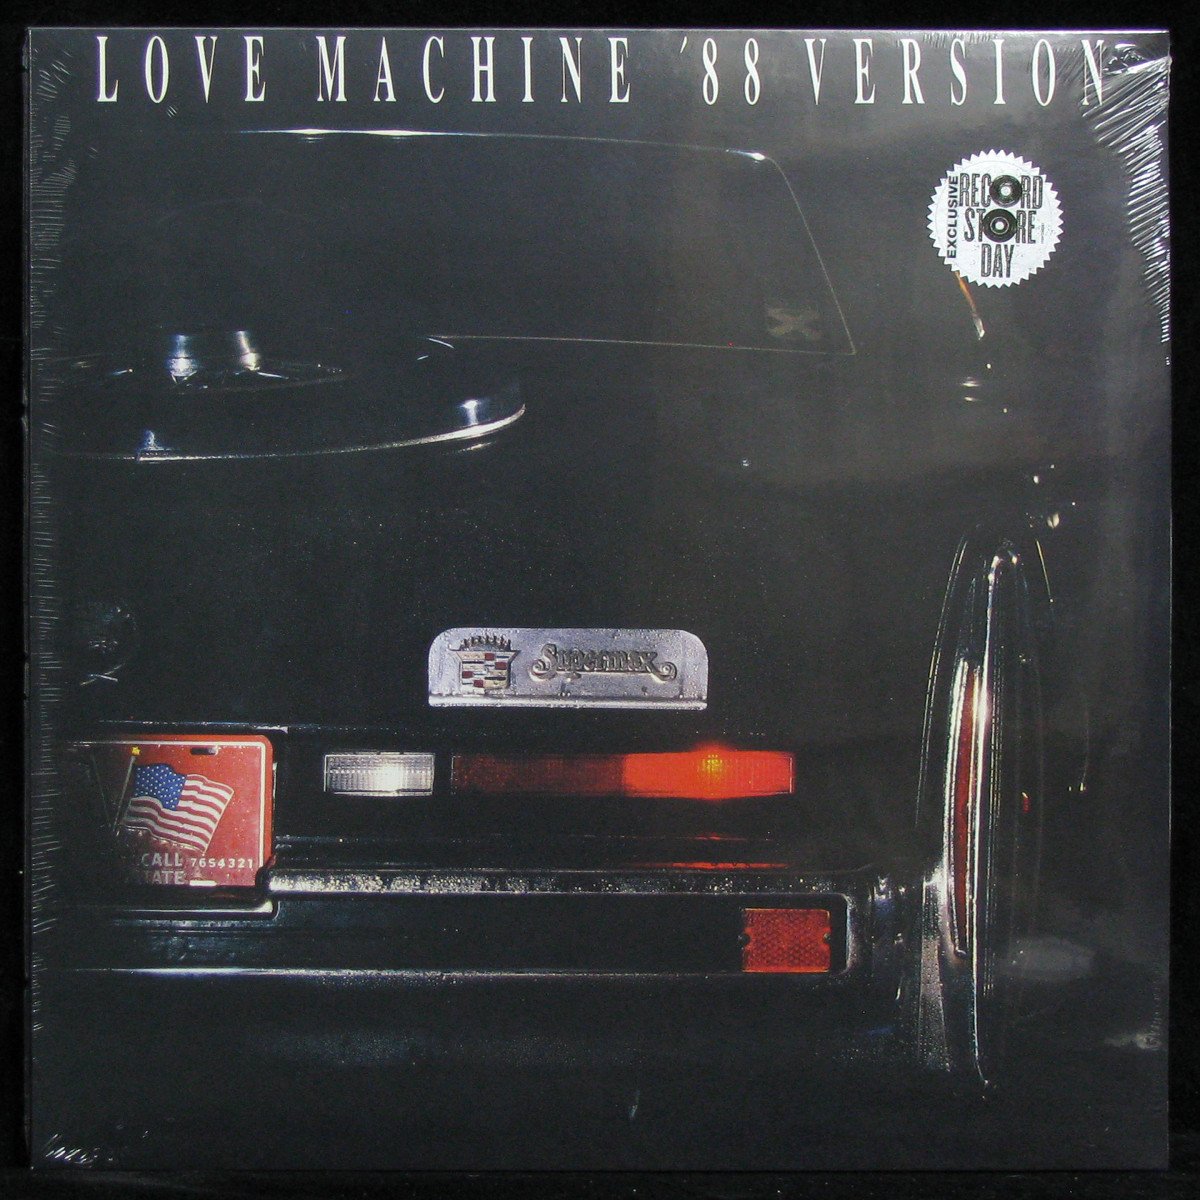 Love Machine ('88 Version) 